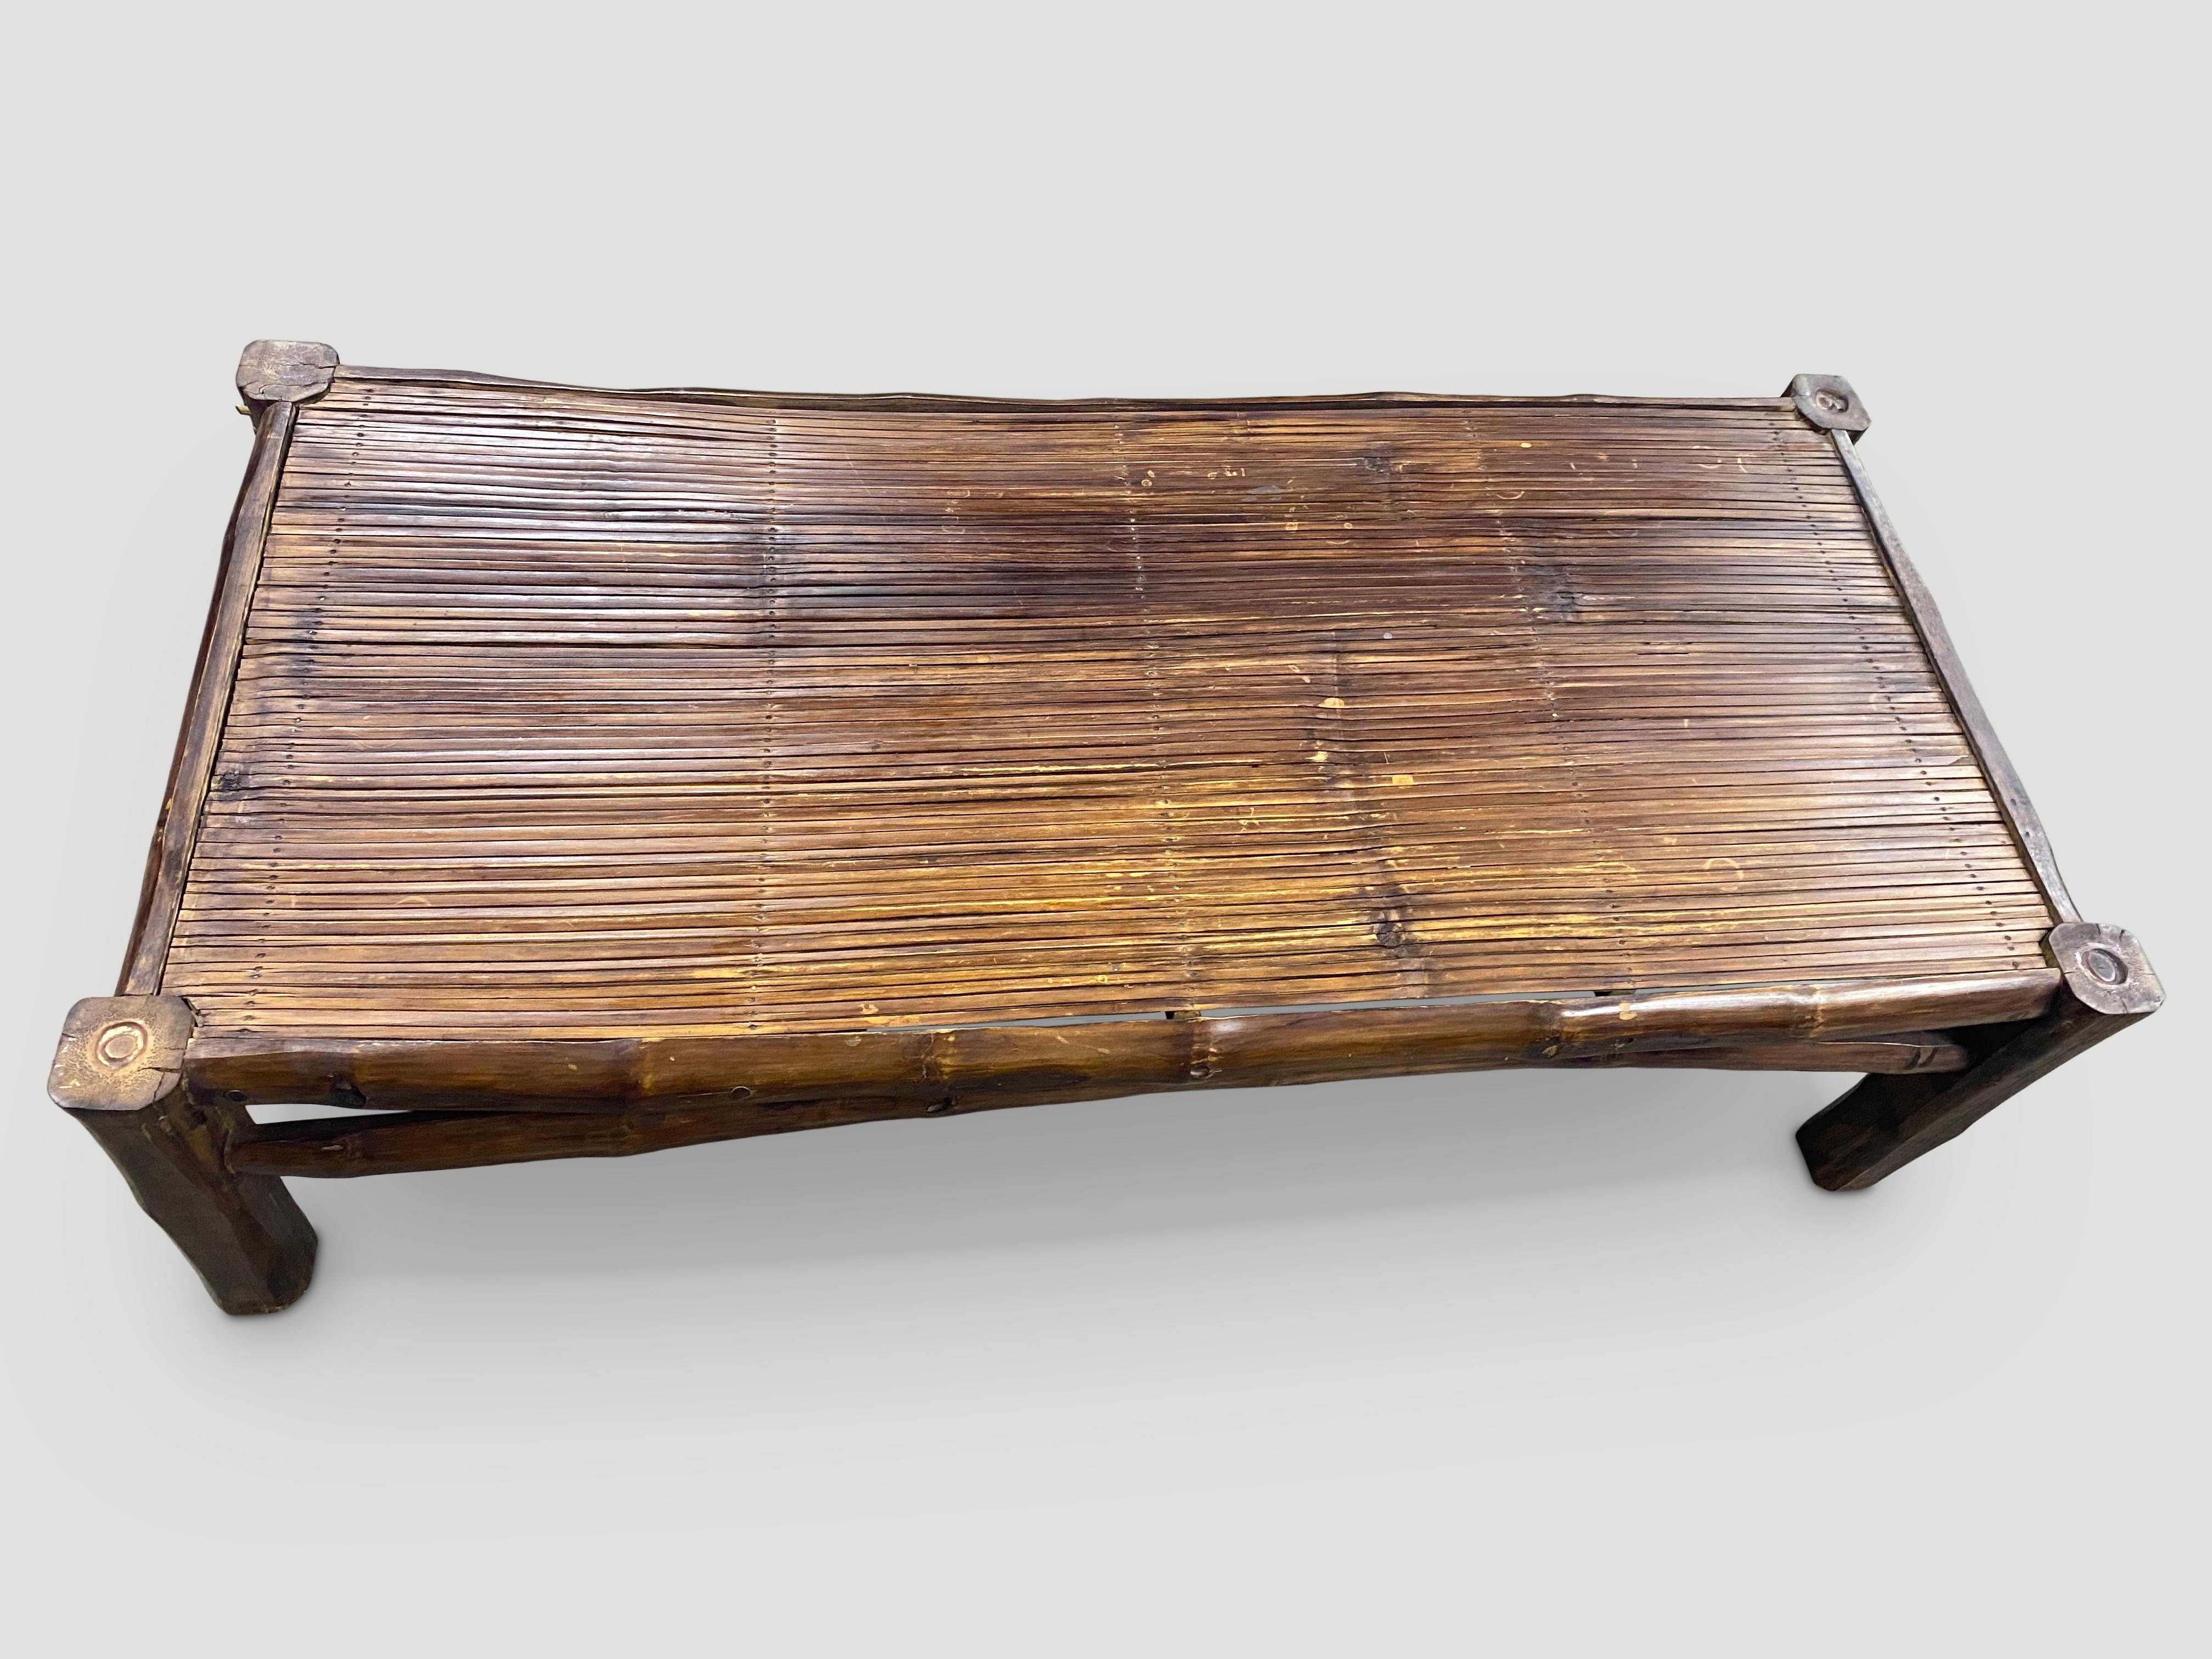 La table basse en bambou est fabriquée à la main à partir de bambou ancien. Léger et facile à déplacer.

Cette table basse a été fabriquée à la main dans l'esprit du Wabi-Sabi, une philosophie japonaise selon laquelle la beauté peut être trouvée